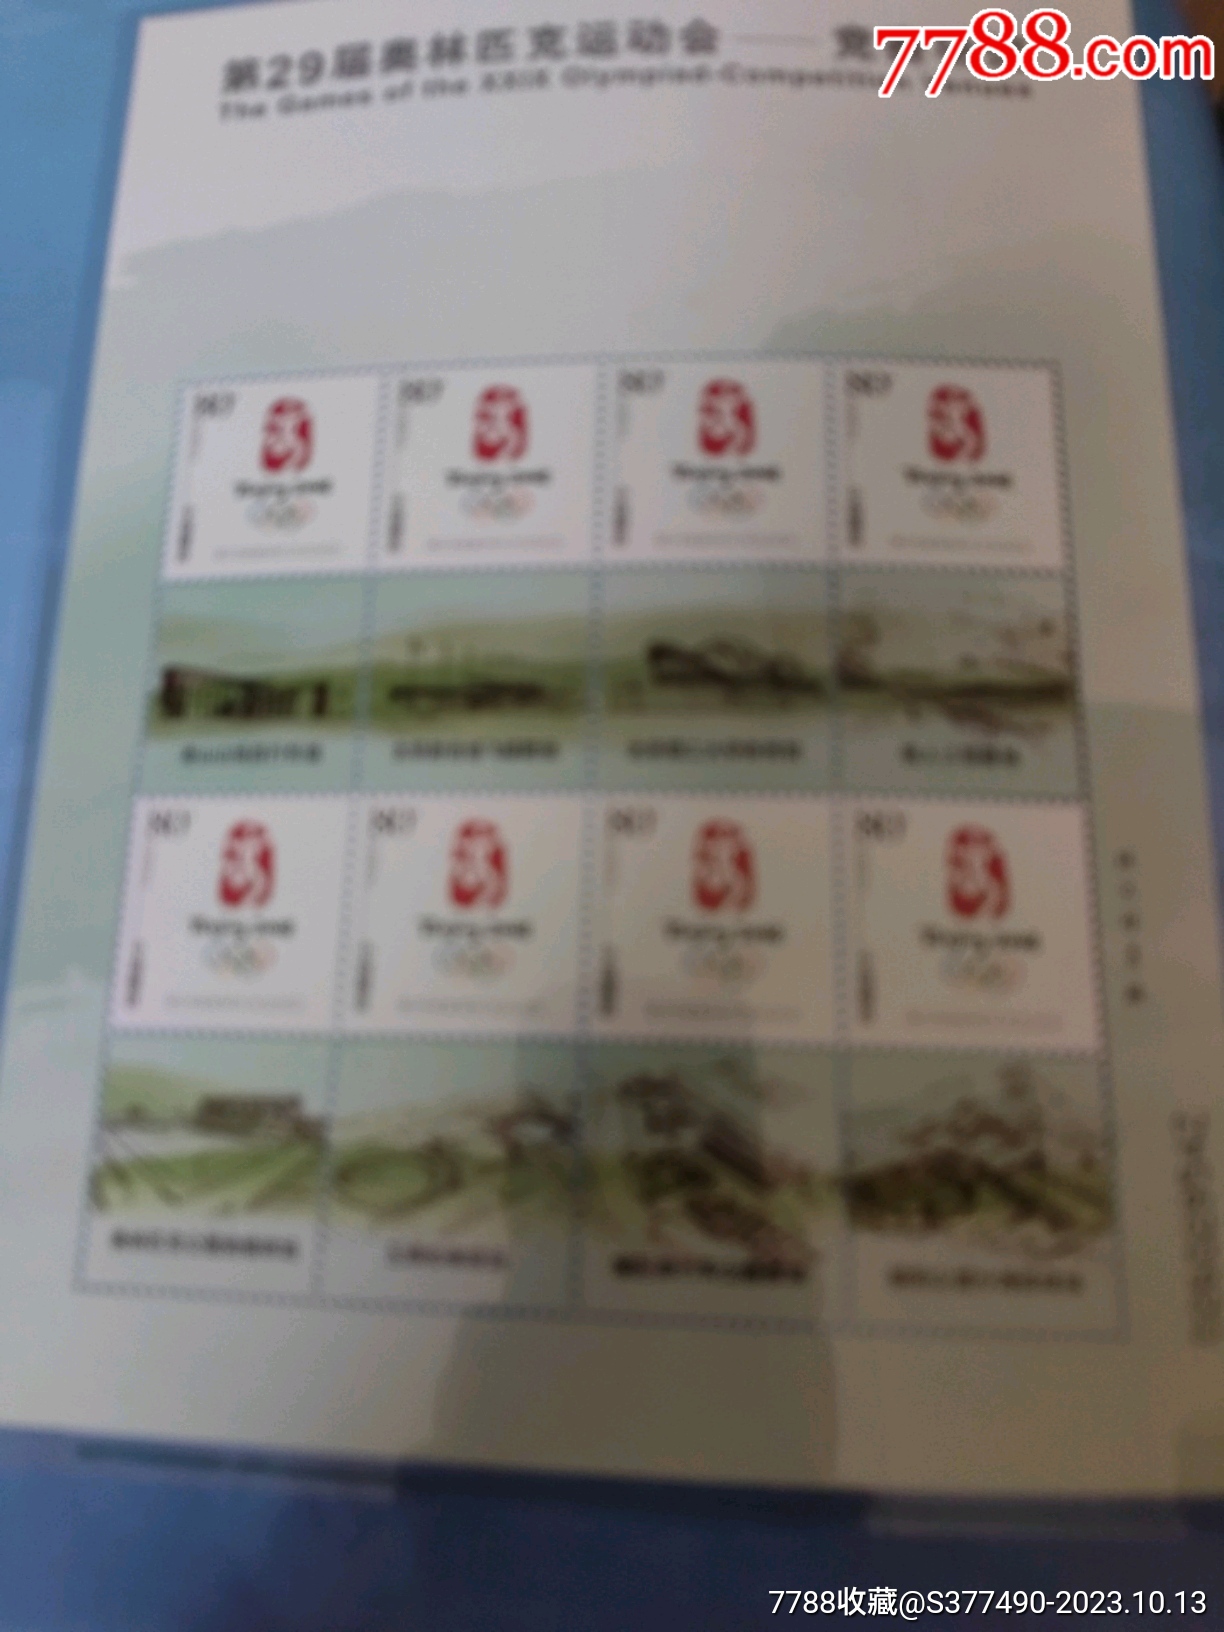 2008奧運會竟賽場館郵票小版張大全冊_價格276元_第29張_